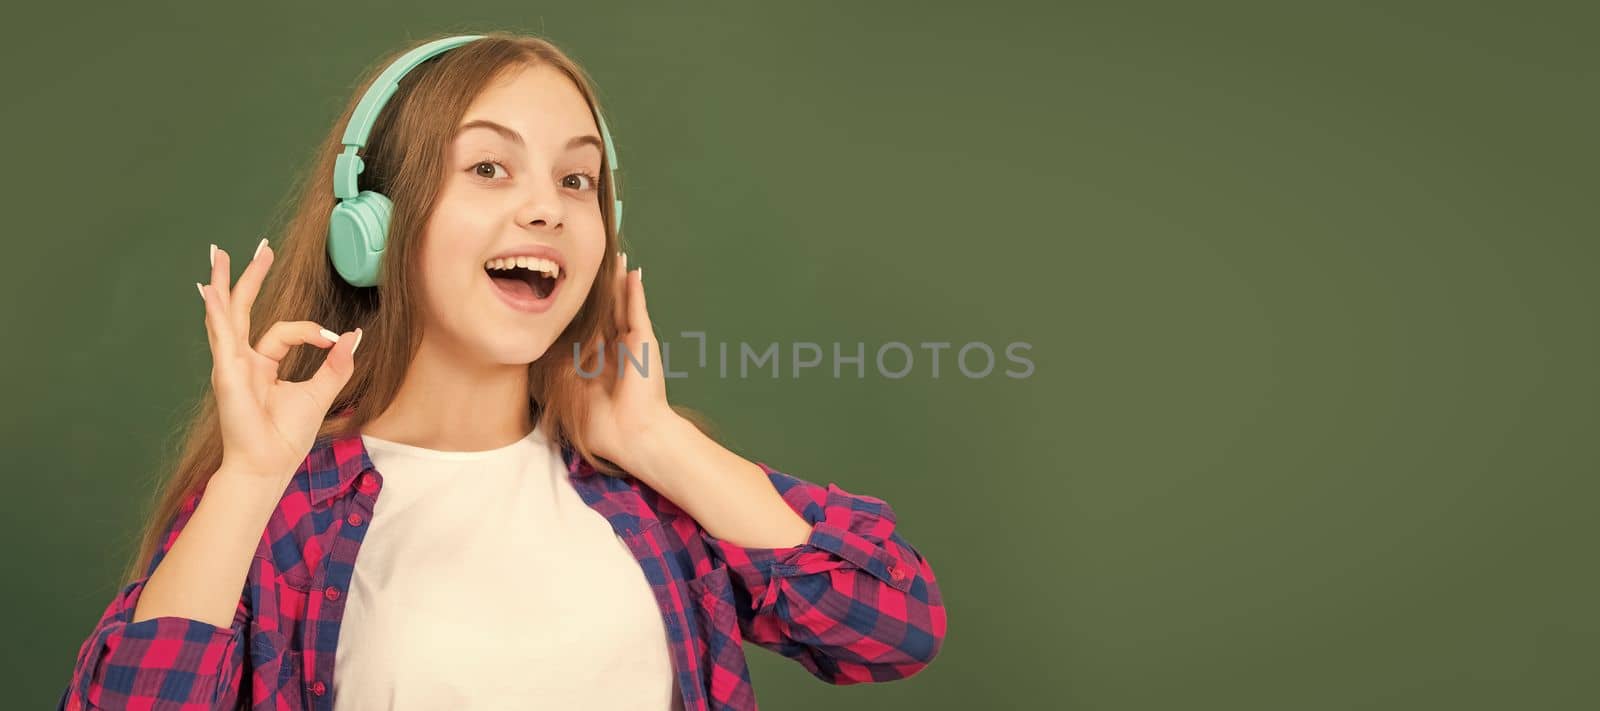 cheerful child listen music in headphones at blackboard. Portrait of schoolgirl student, studio banner header. School child face, copyspace